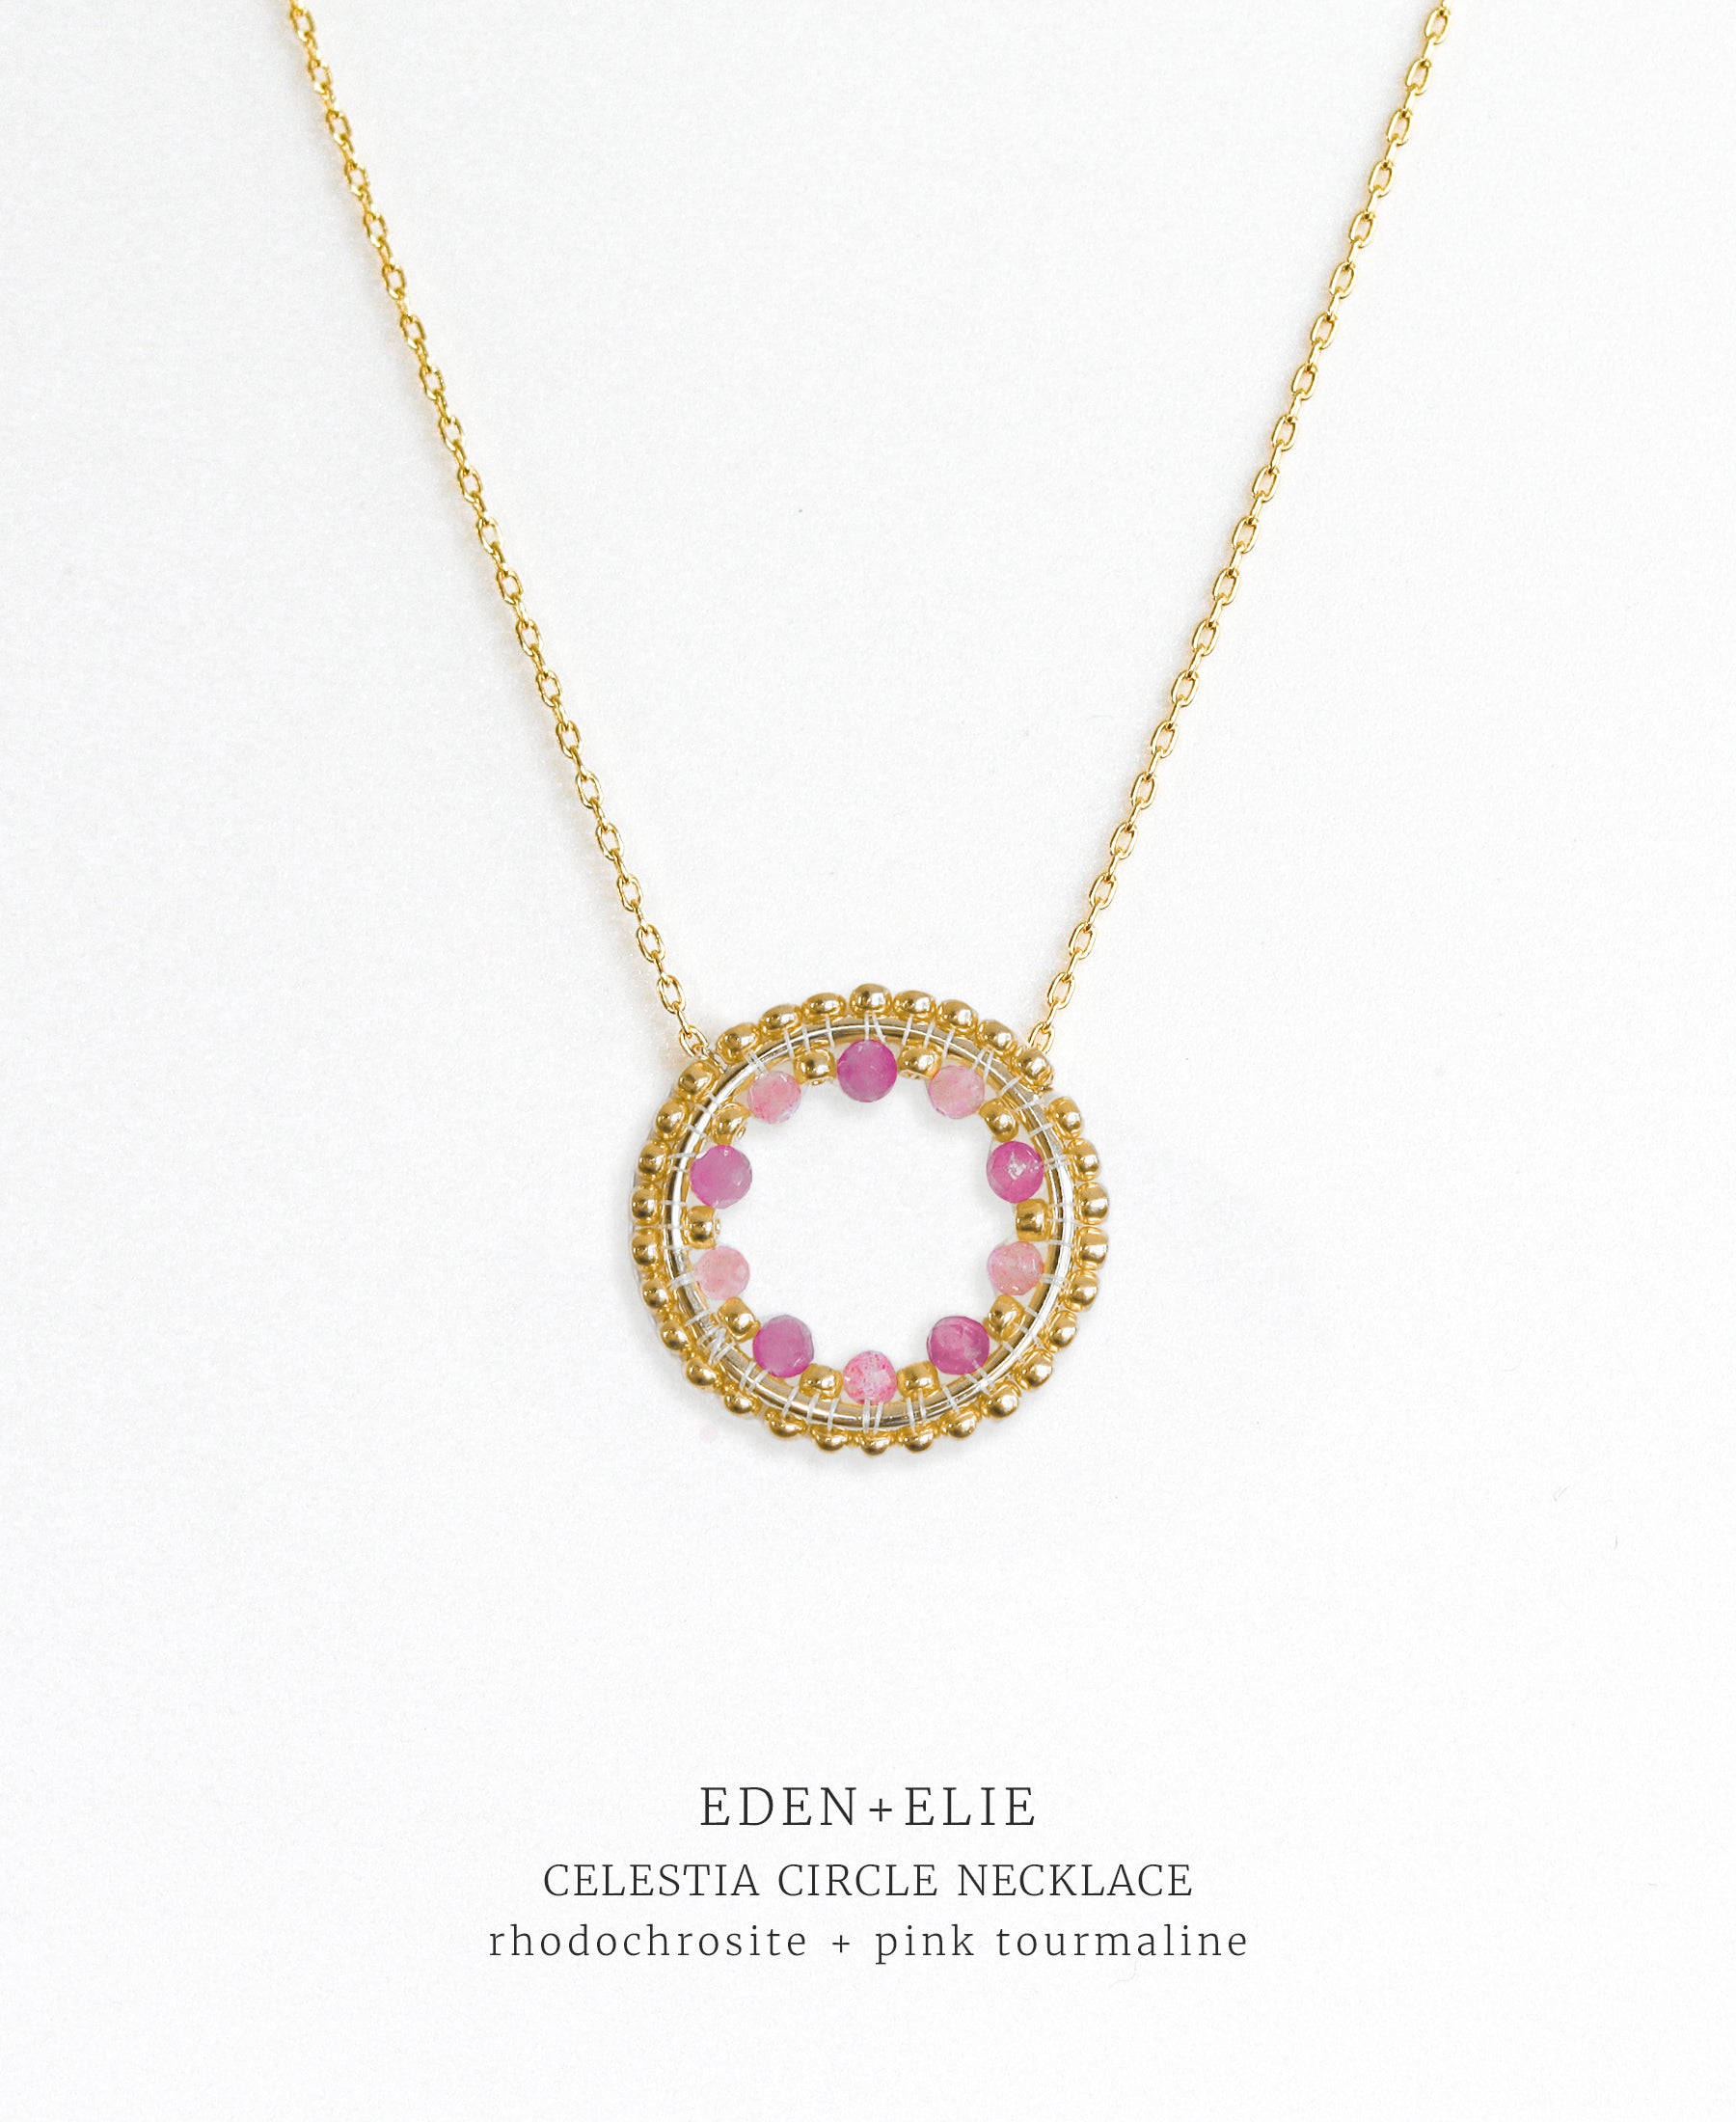 EDEN + ELIE Celestia Circle Necklace - Rhodochrosite + Pink Tourmaline